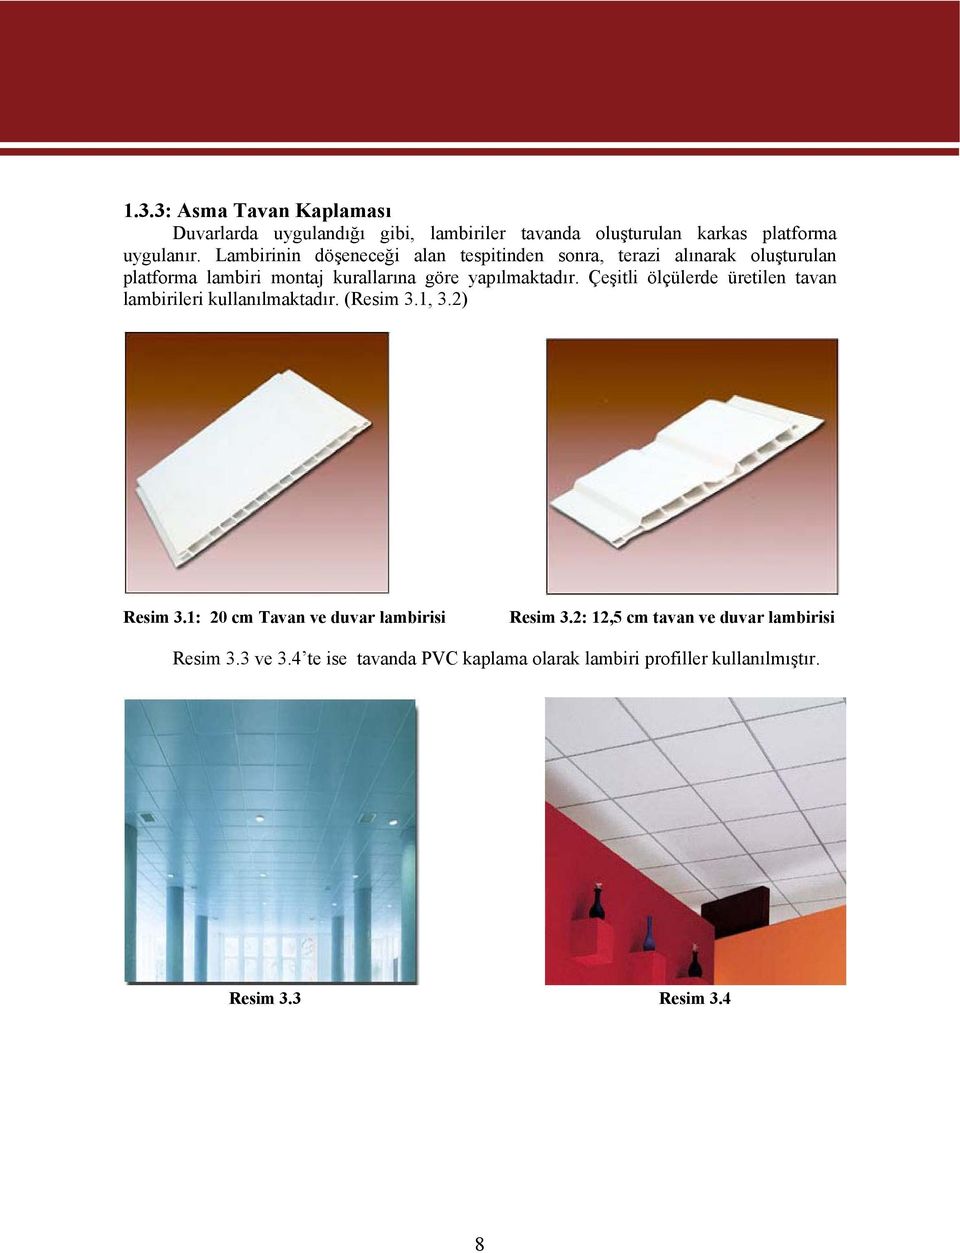 Çeşitli ölçülerde üretilen tavan lambirileri kullanılmaktadır. (Resim 3.1, 3.2) Resim 3.1: 20 cm Tavan ve duvar lambirisi Resim 3.